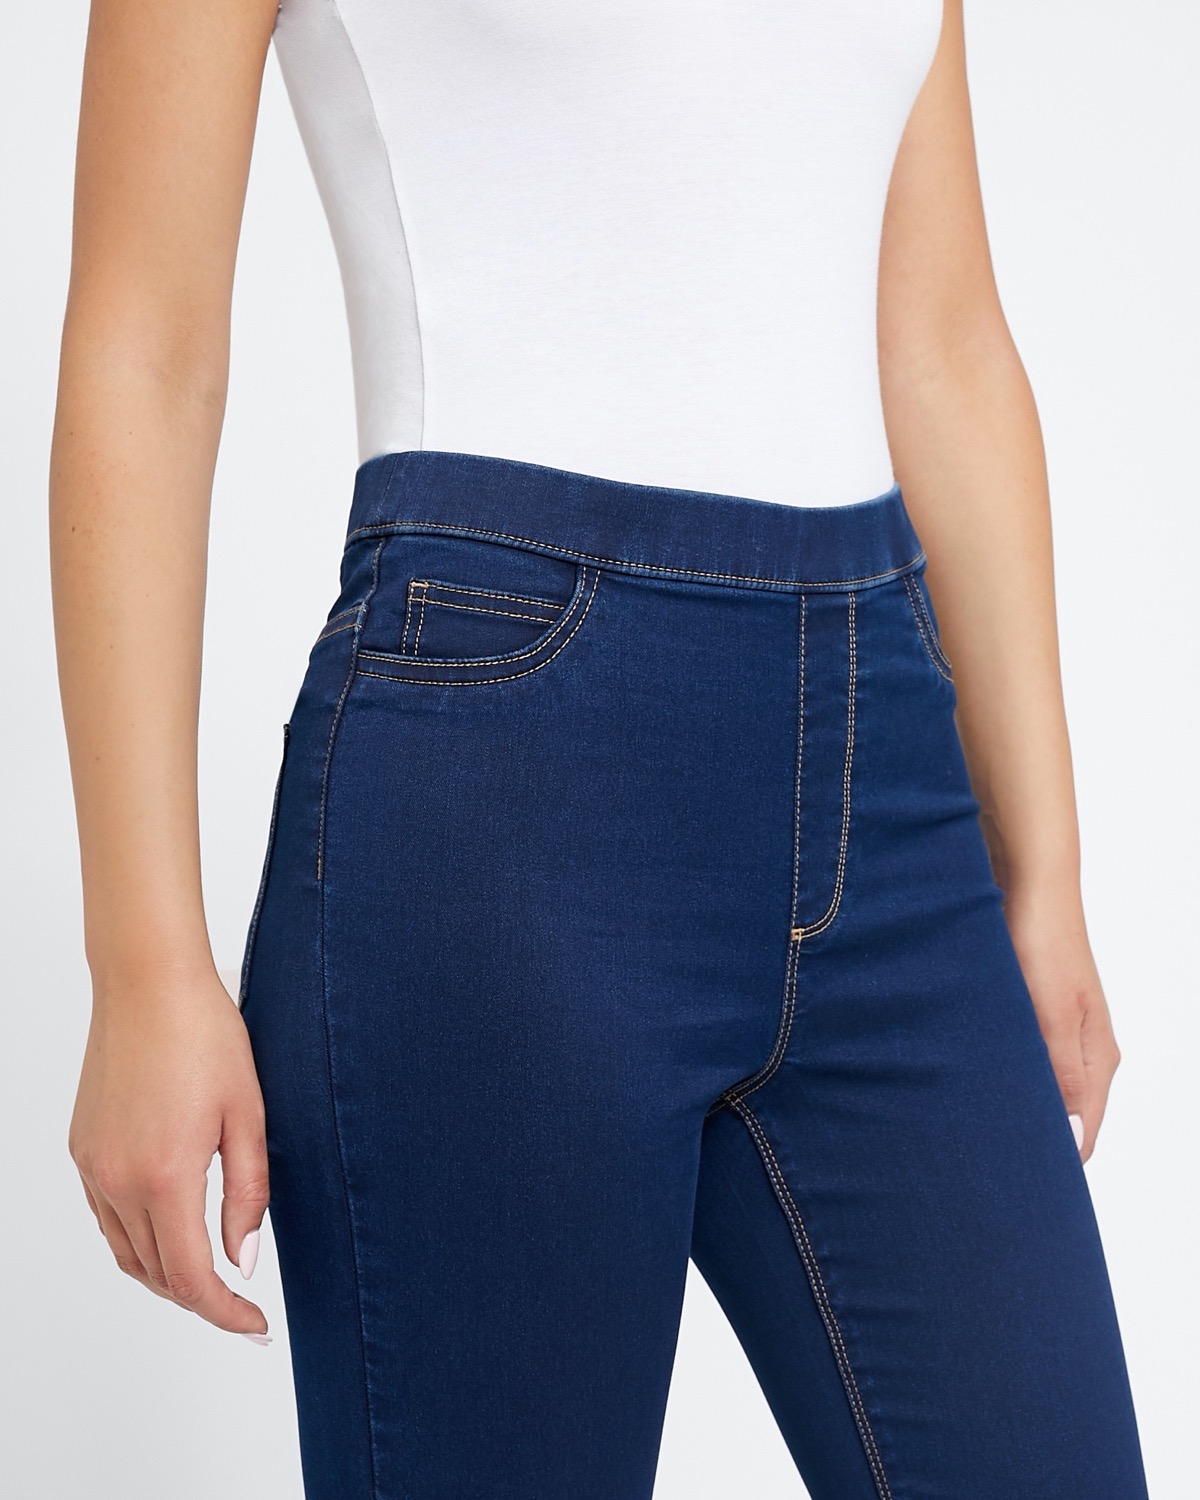 wrangler jeans 96501ds